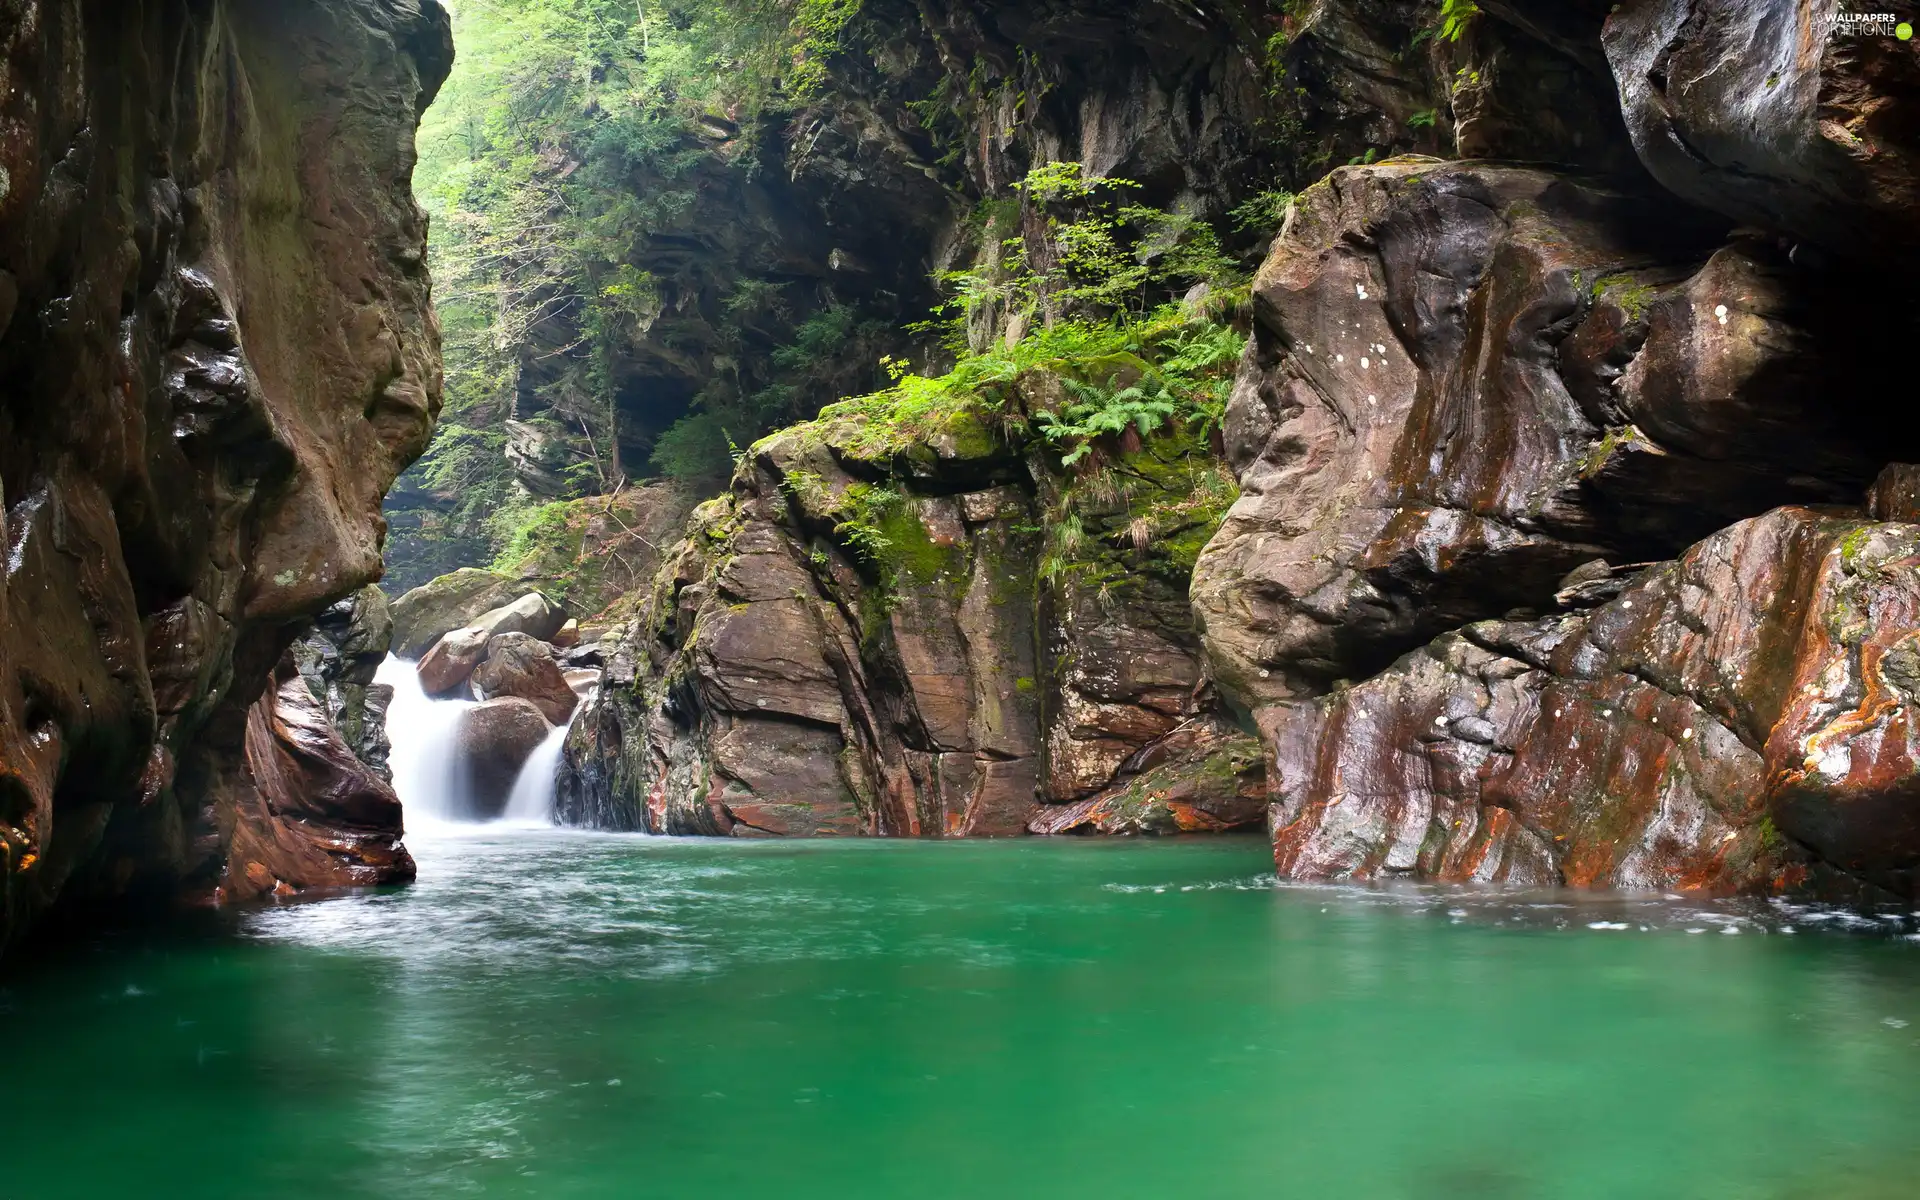 turquoise, rocks, waterfall, lake